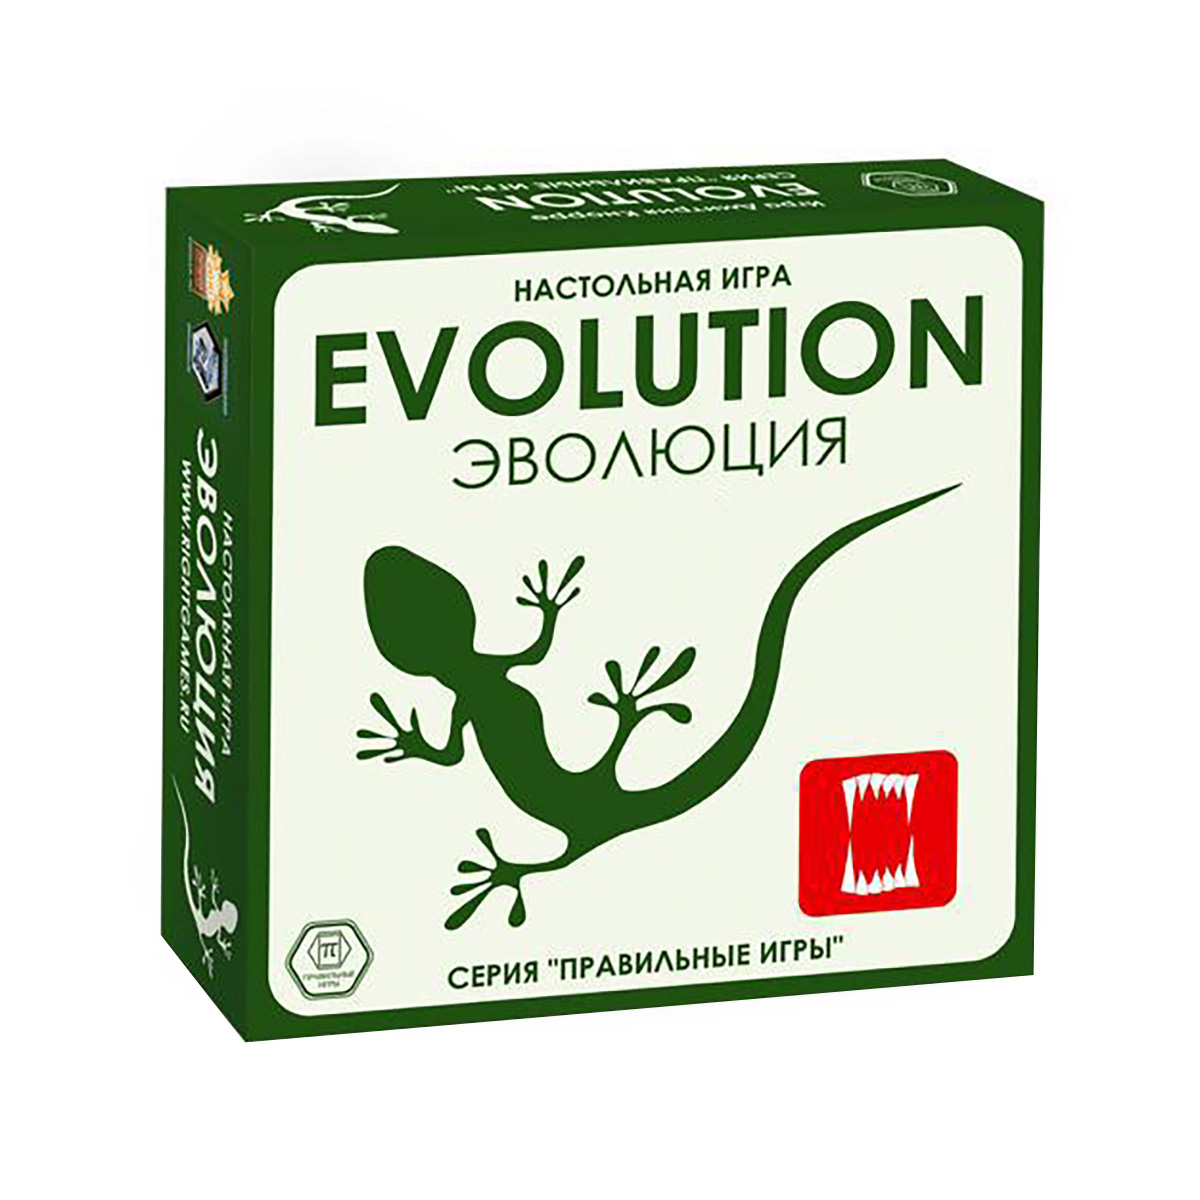 Игра настольная Правильные игры Эволюция. Базовый набор 13-01-01 Фото 1.